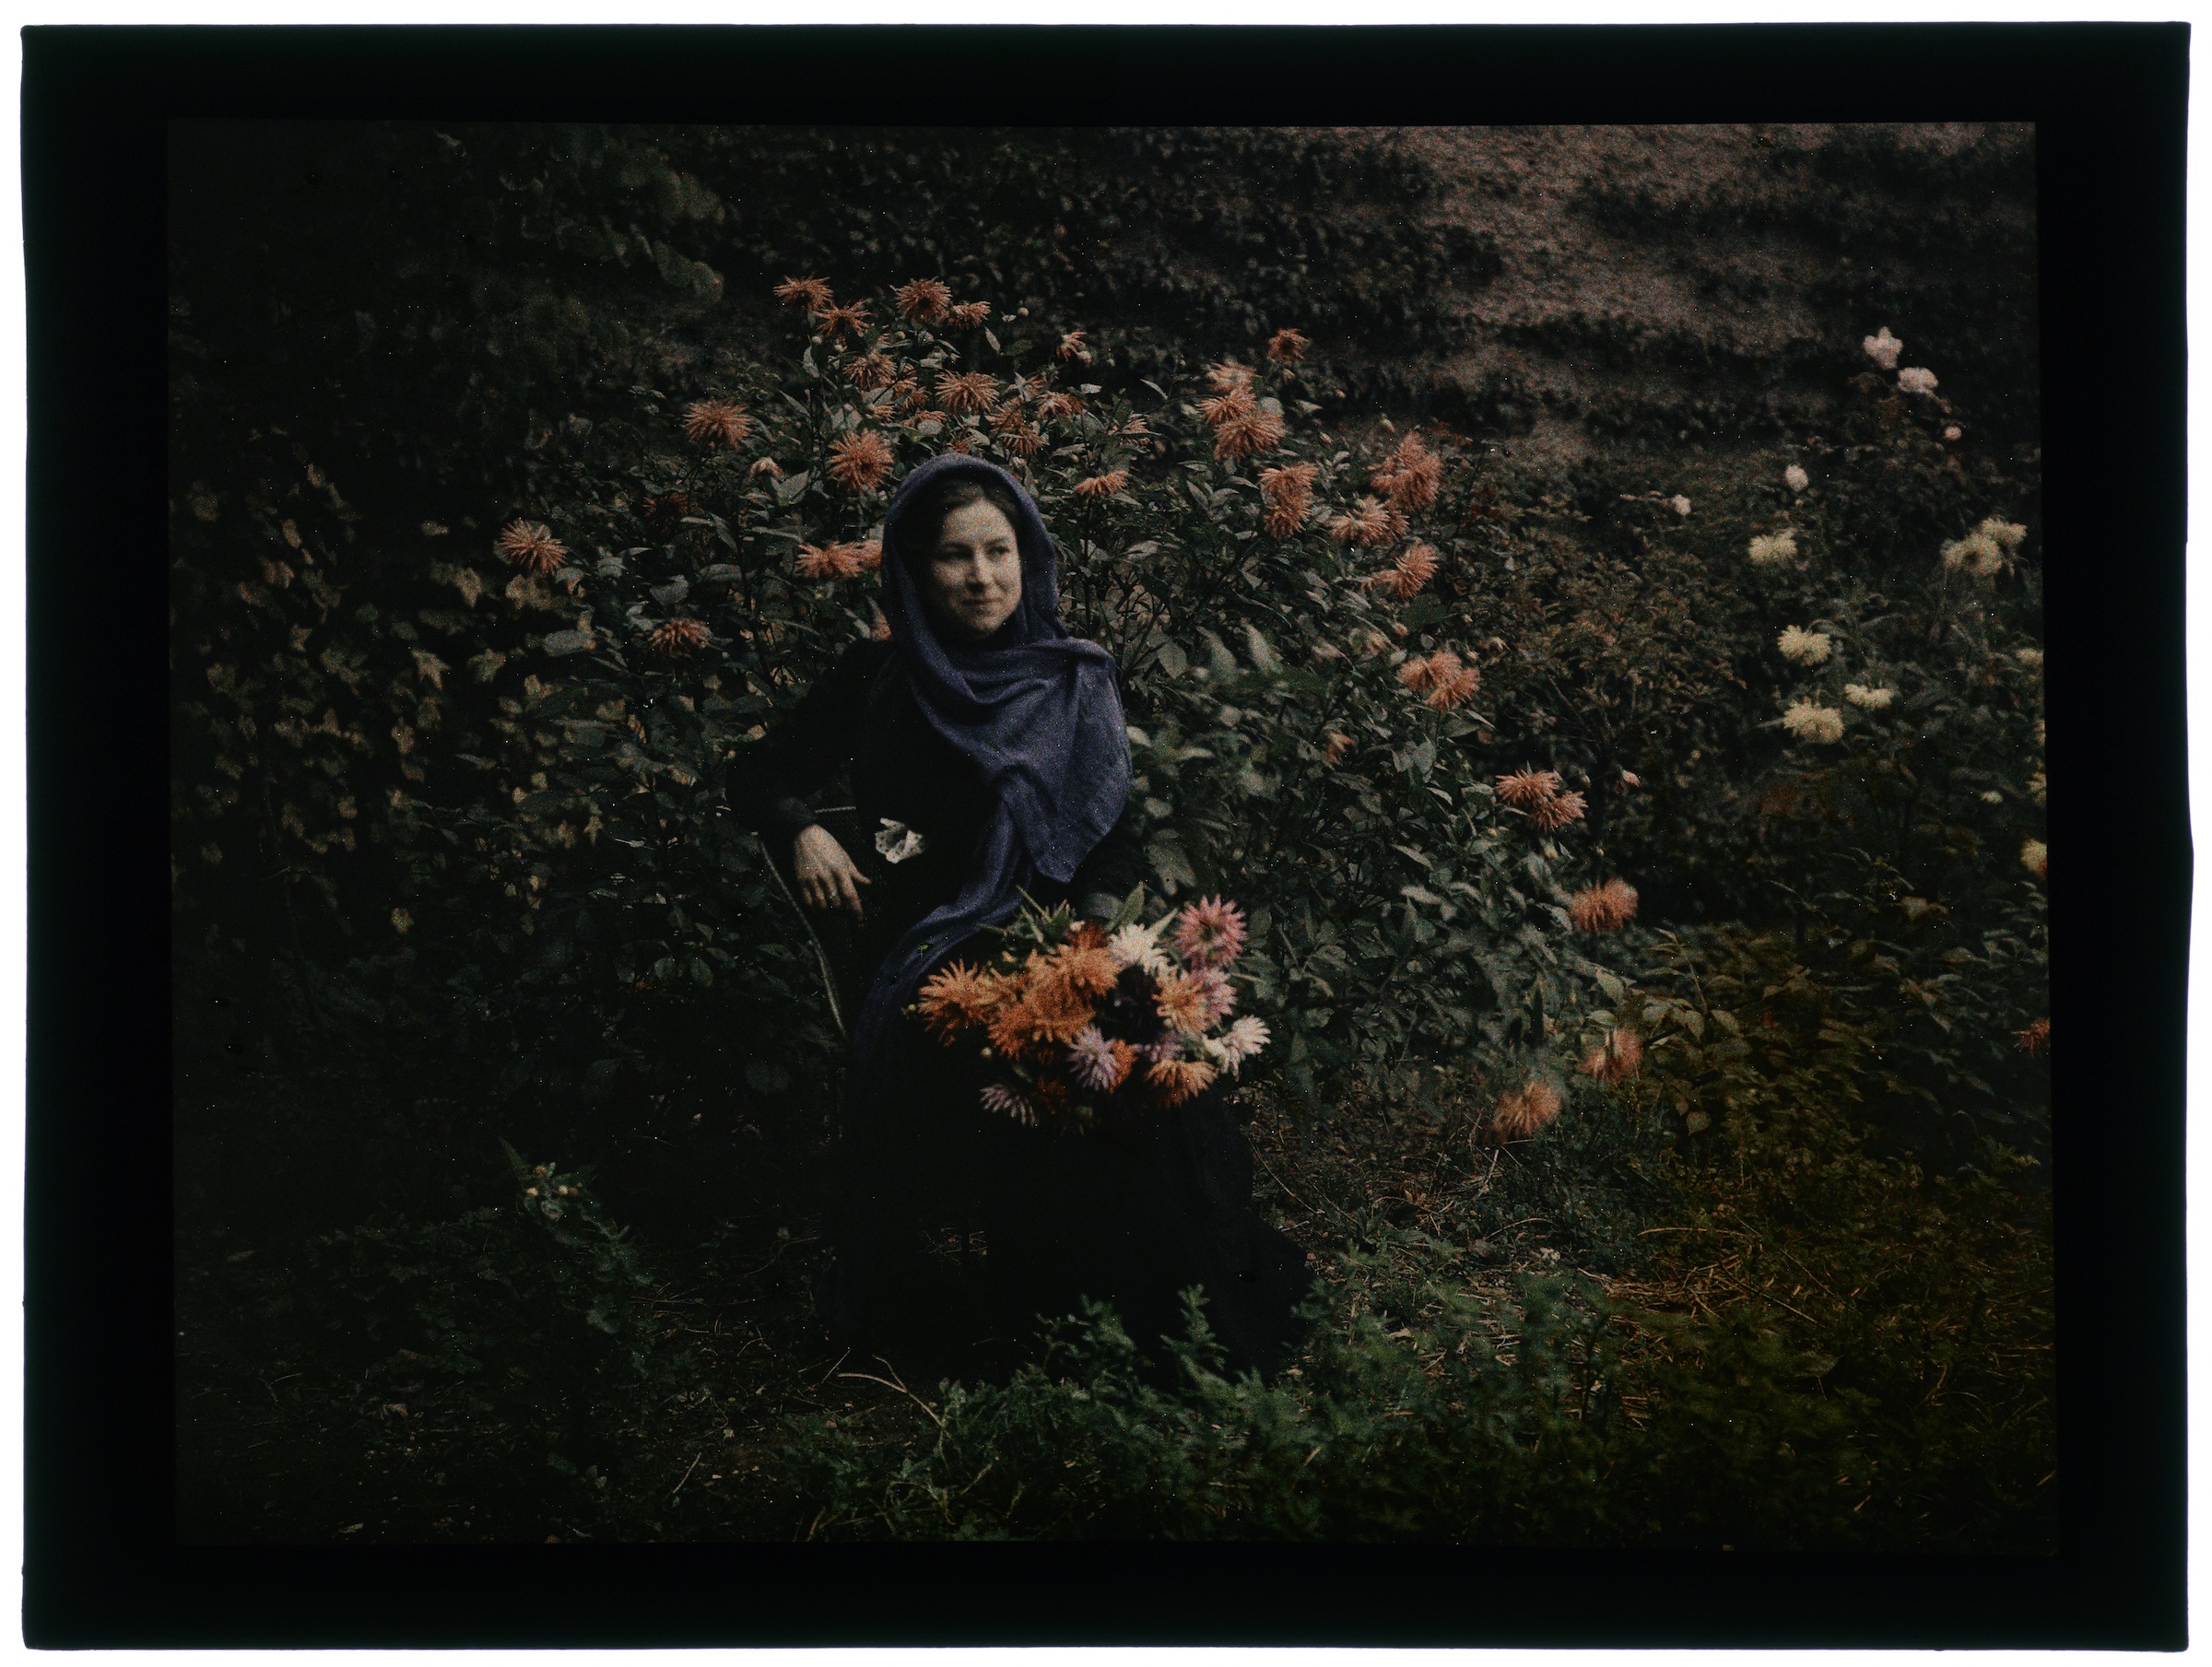 Femme dans le verger avec arbres en fleurs